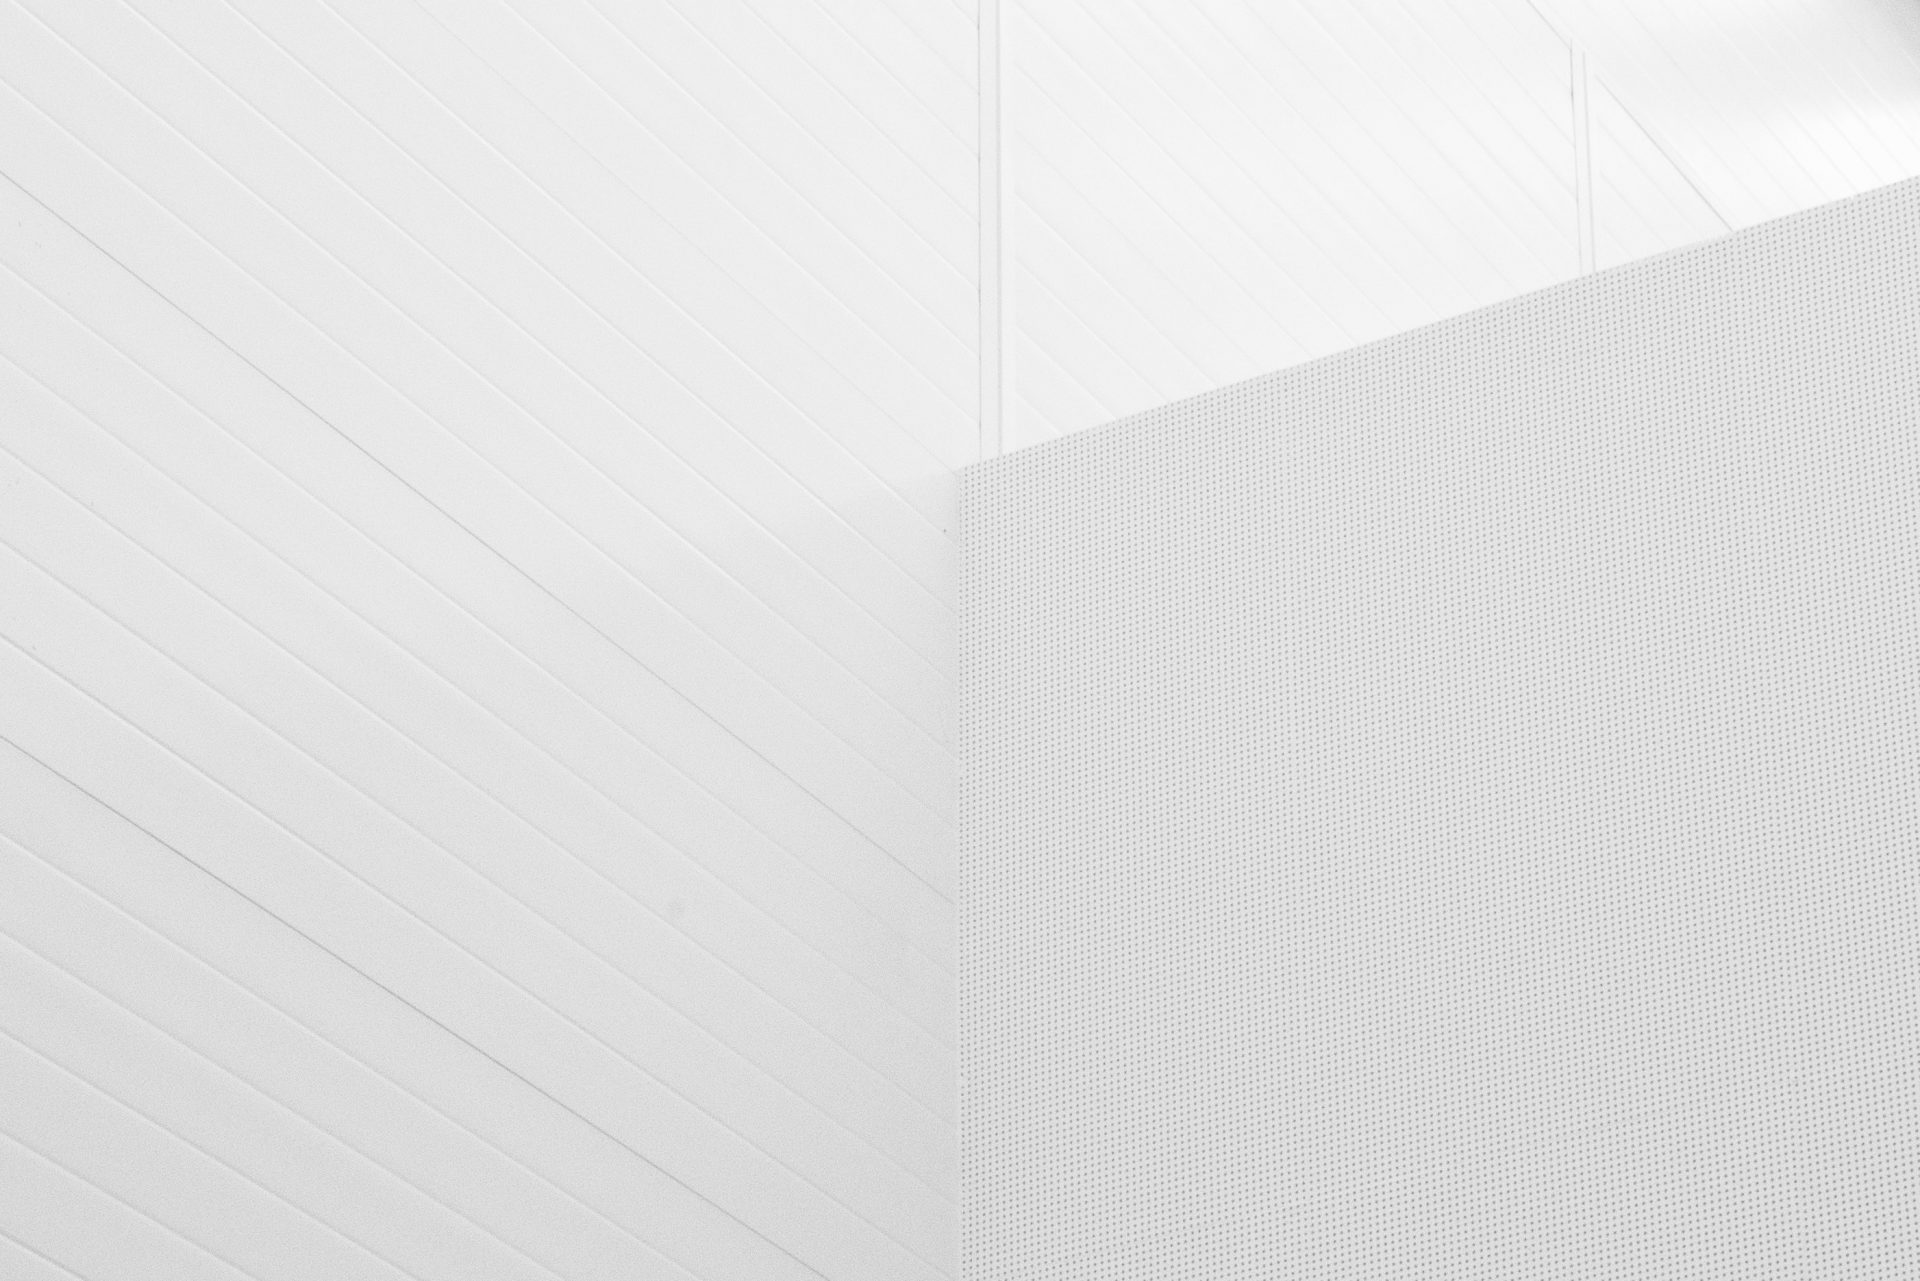 Background tường trắng hiện đại: Với ảnh background tường trắng hiện đại, bạn có thể thêm một phần tử tinh tế cho bất kỳ thiết kế của mình. Với sự tập trung vào sự tối giản và không gian, chúng lý tưởng trong các hình ảnh kiến trúc hoặc thiết kế nội thất. Tham khảo thêm và tải xuống ngay hôm nay.